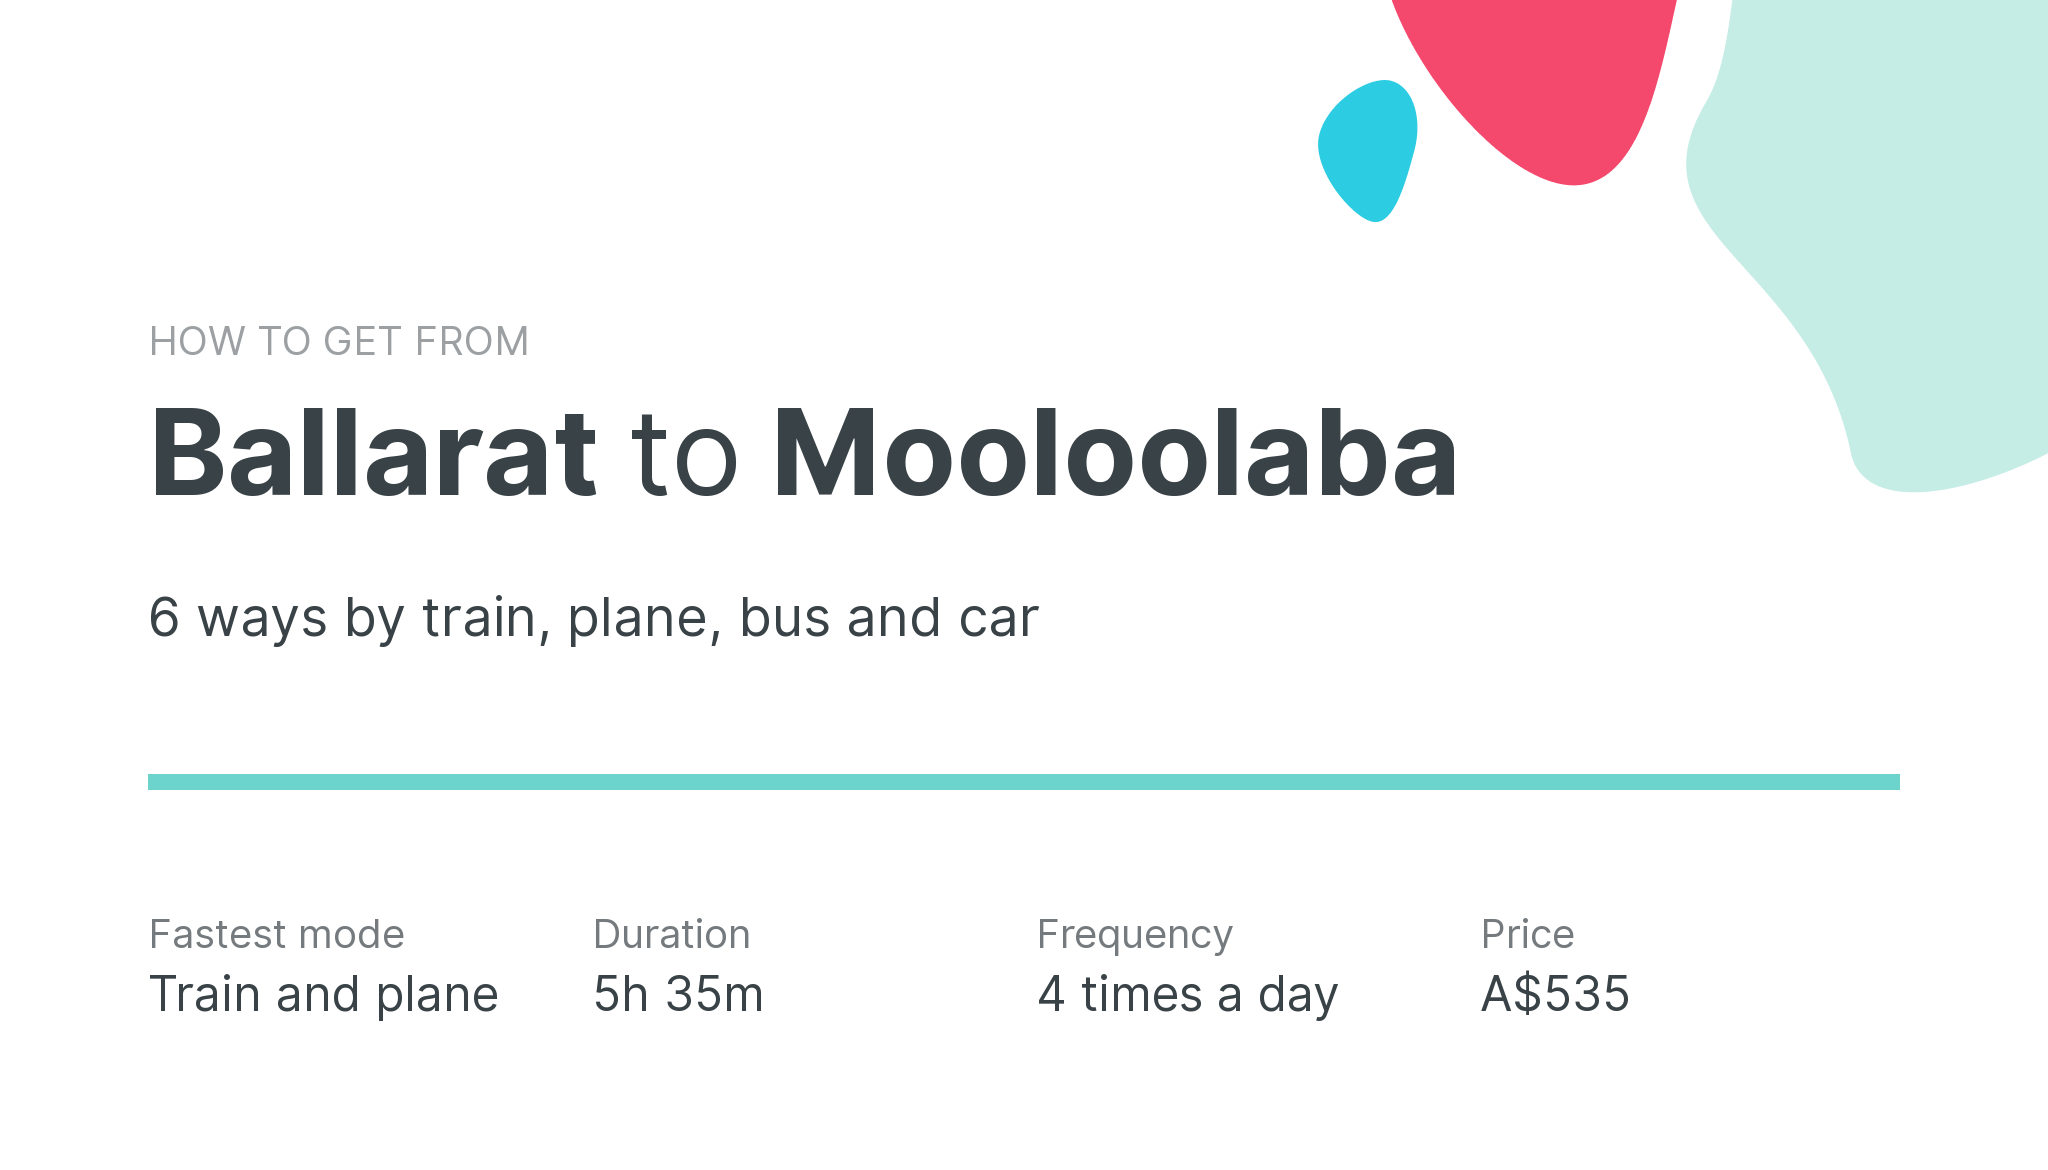 How do I get from Ballarat to Mooloolaba